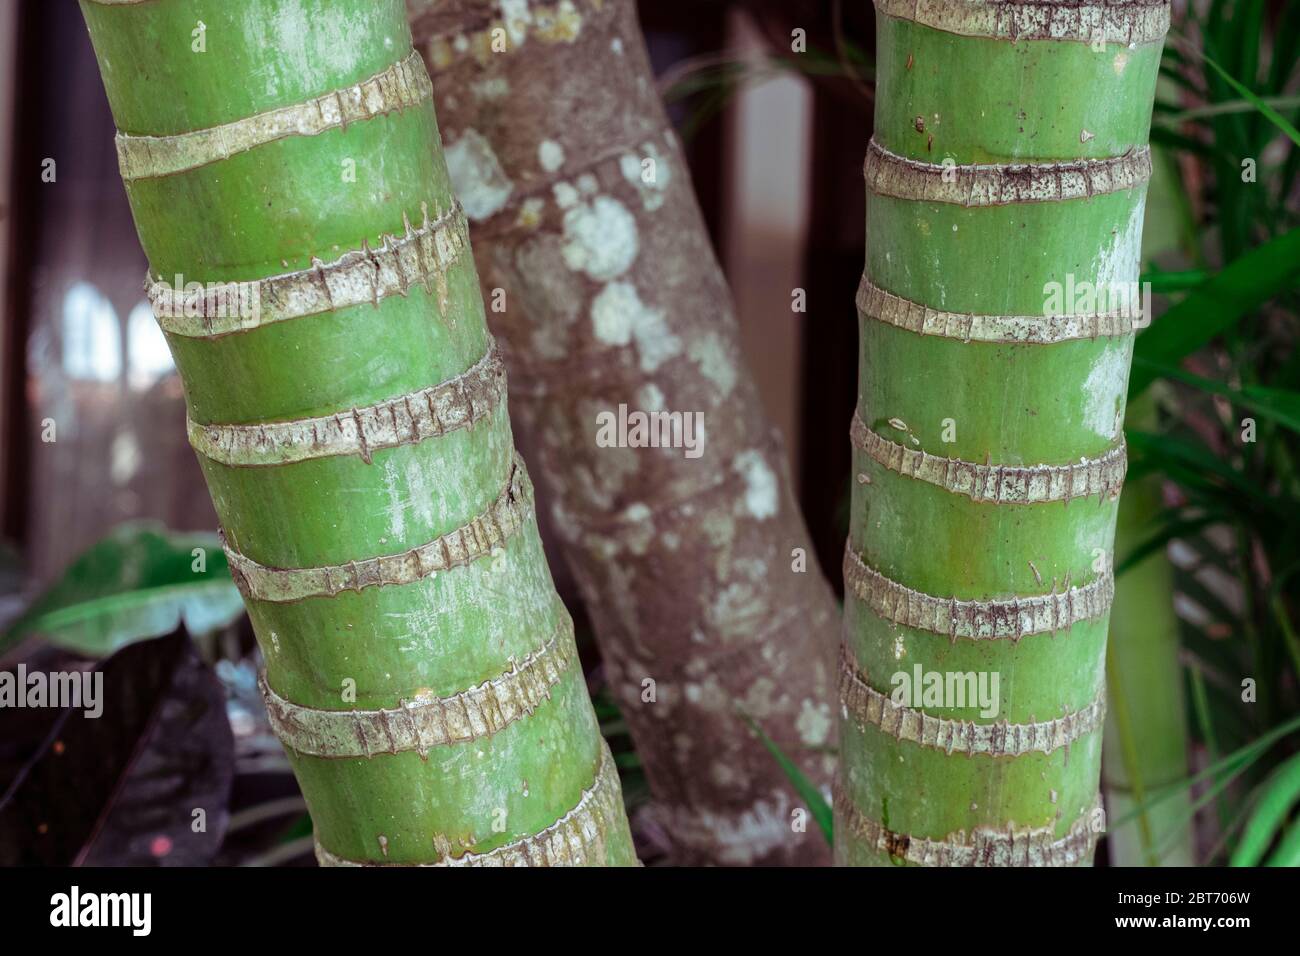 Primo piano foto di tre alberi di bambù abbastanza vecchi - due sono verdi, freschi, uno è più vecchio e marrone, Bali Indonesia, Denpasar Foto Stock